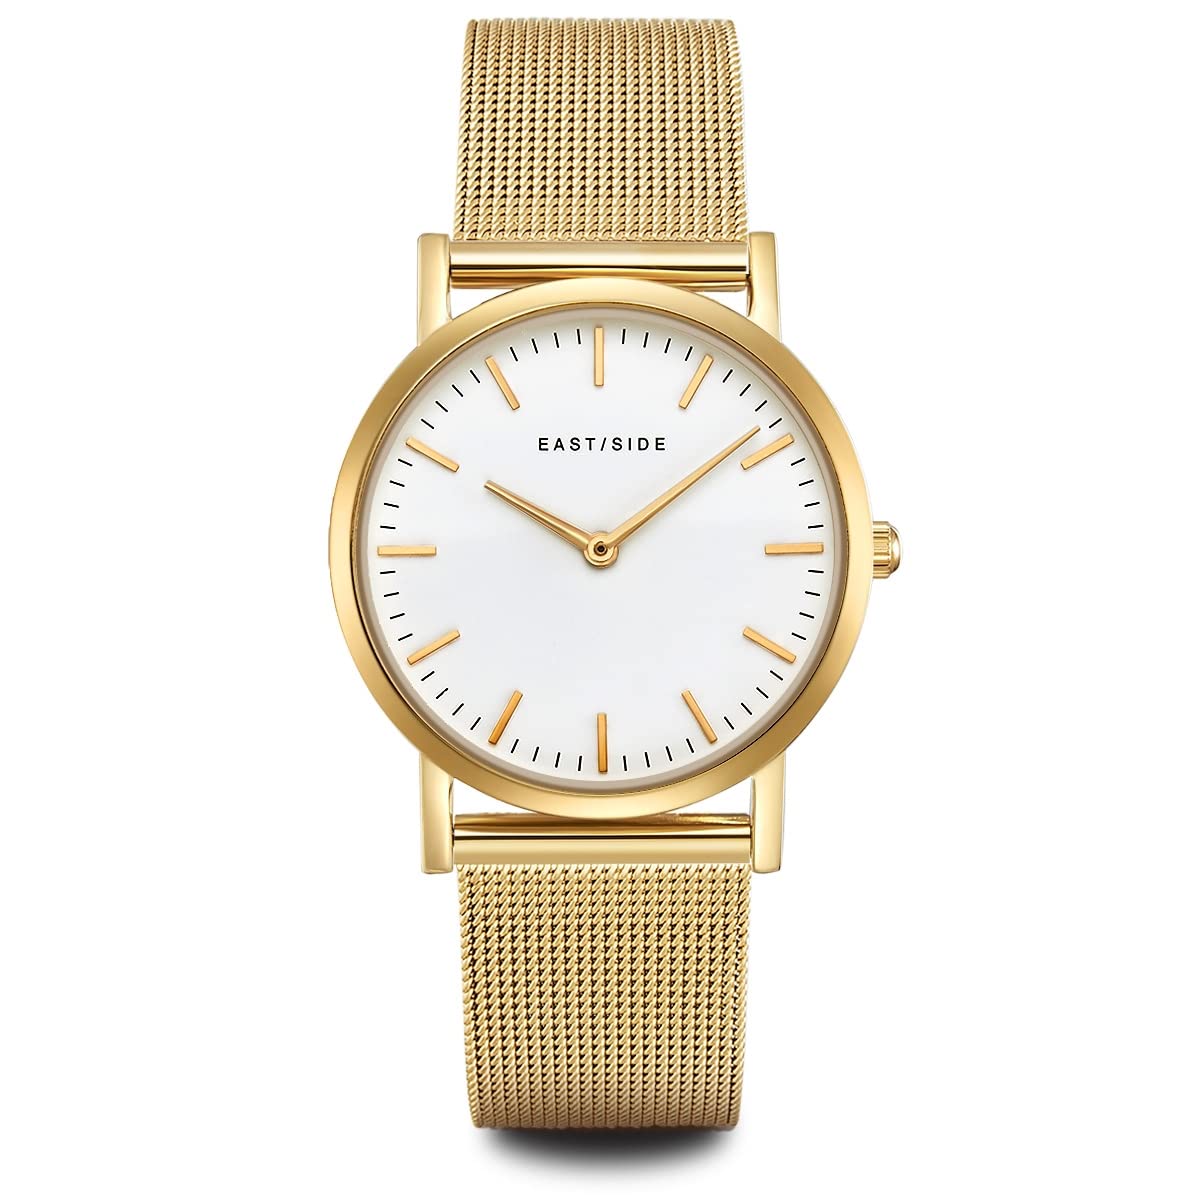 Eastside Damen Uhr analog Japanisches Quarzwerk mit Edelstahl Armband gelbgold 3 ATM10080011